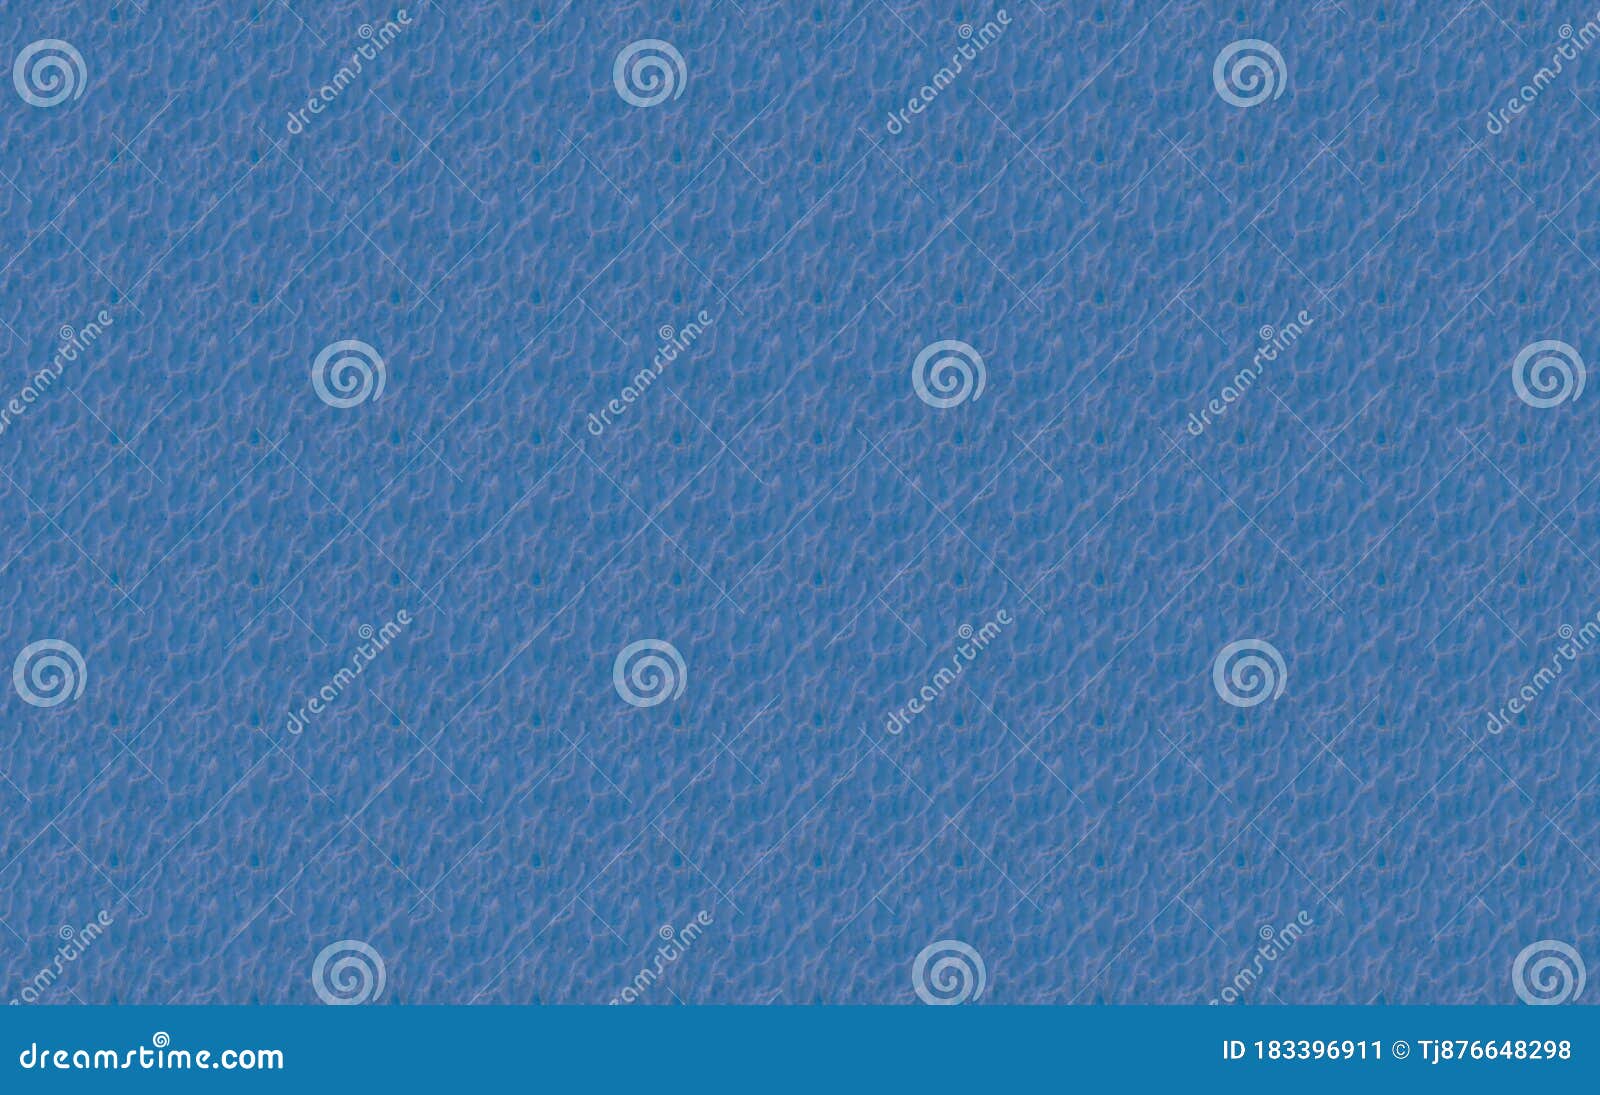 重复的波纹状图案带重复图形的蓝色壁纸背景库存例证 插画包括有盲人 笔记本 数字 颜色 当代